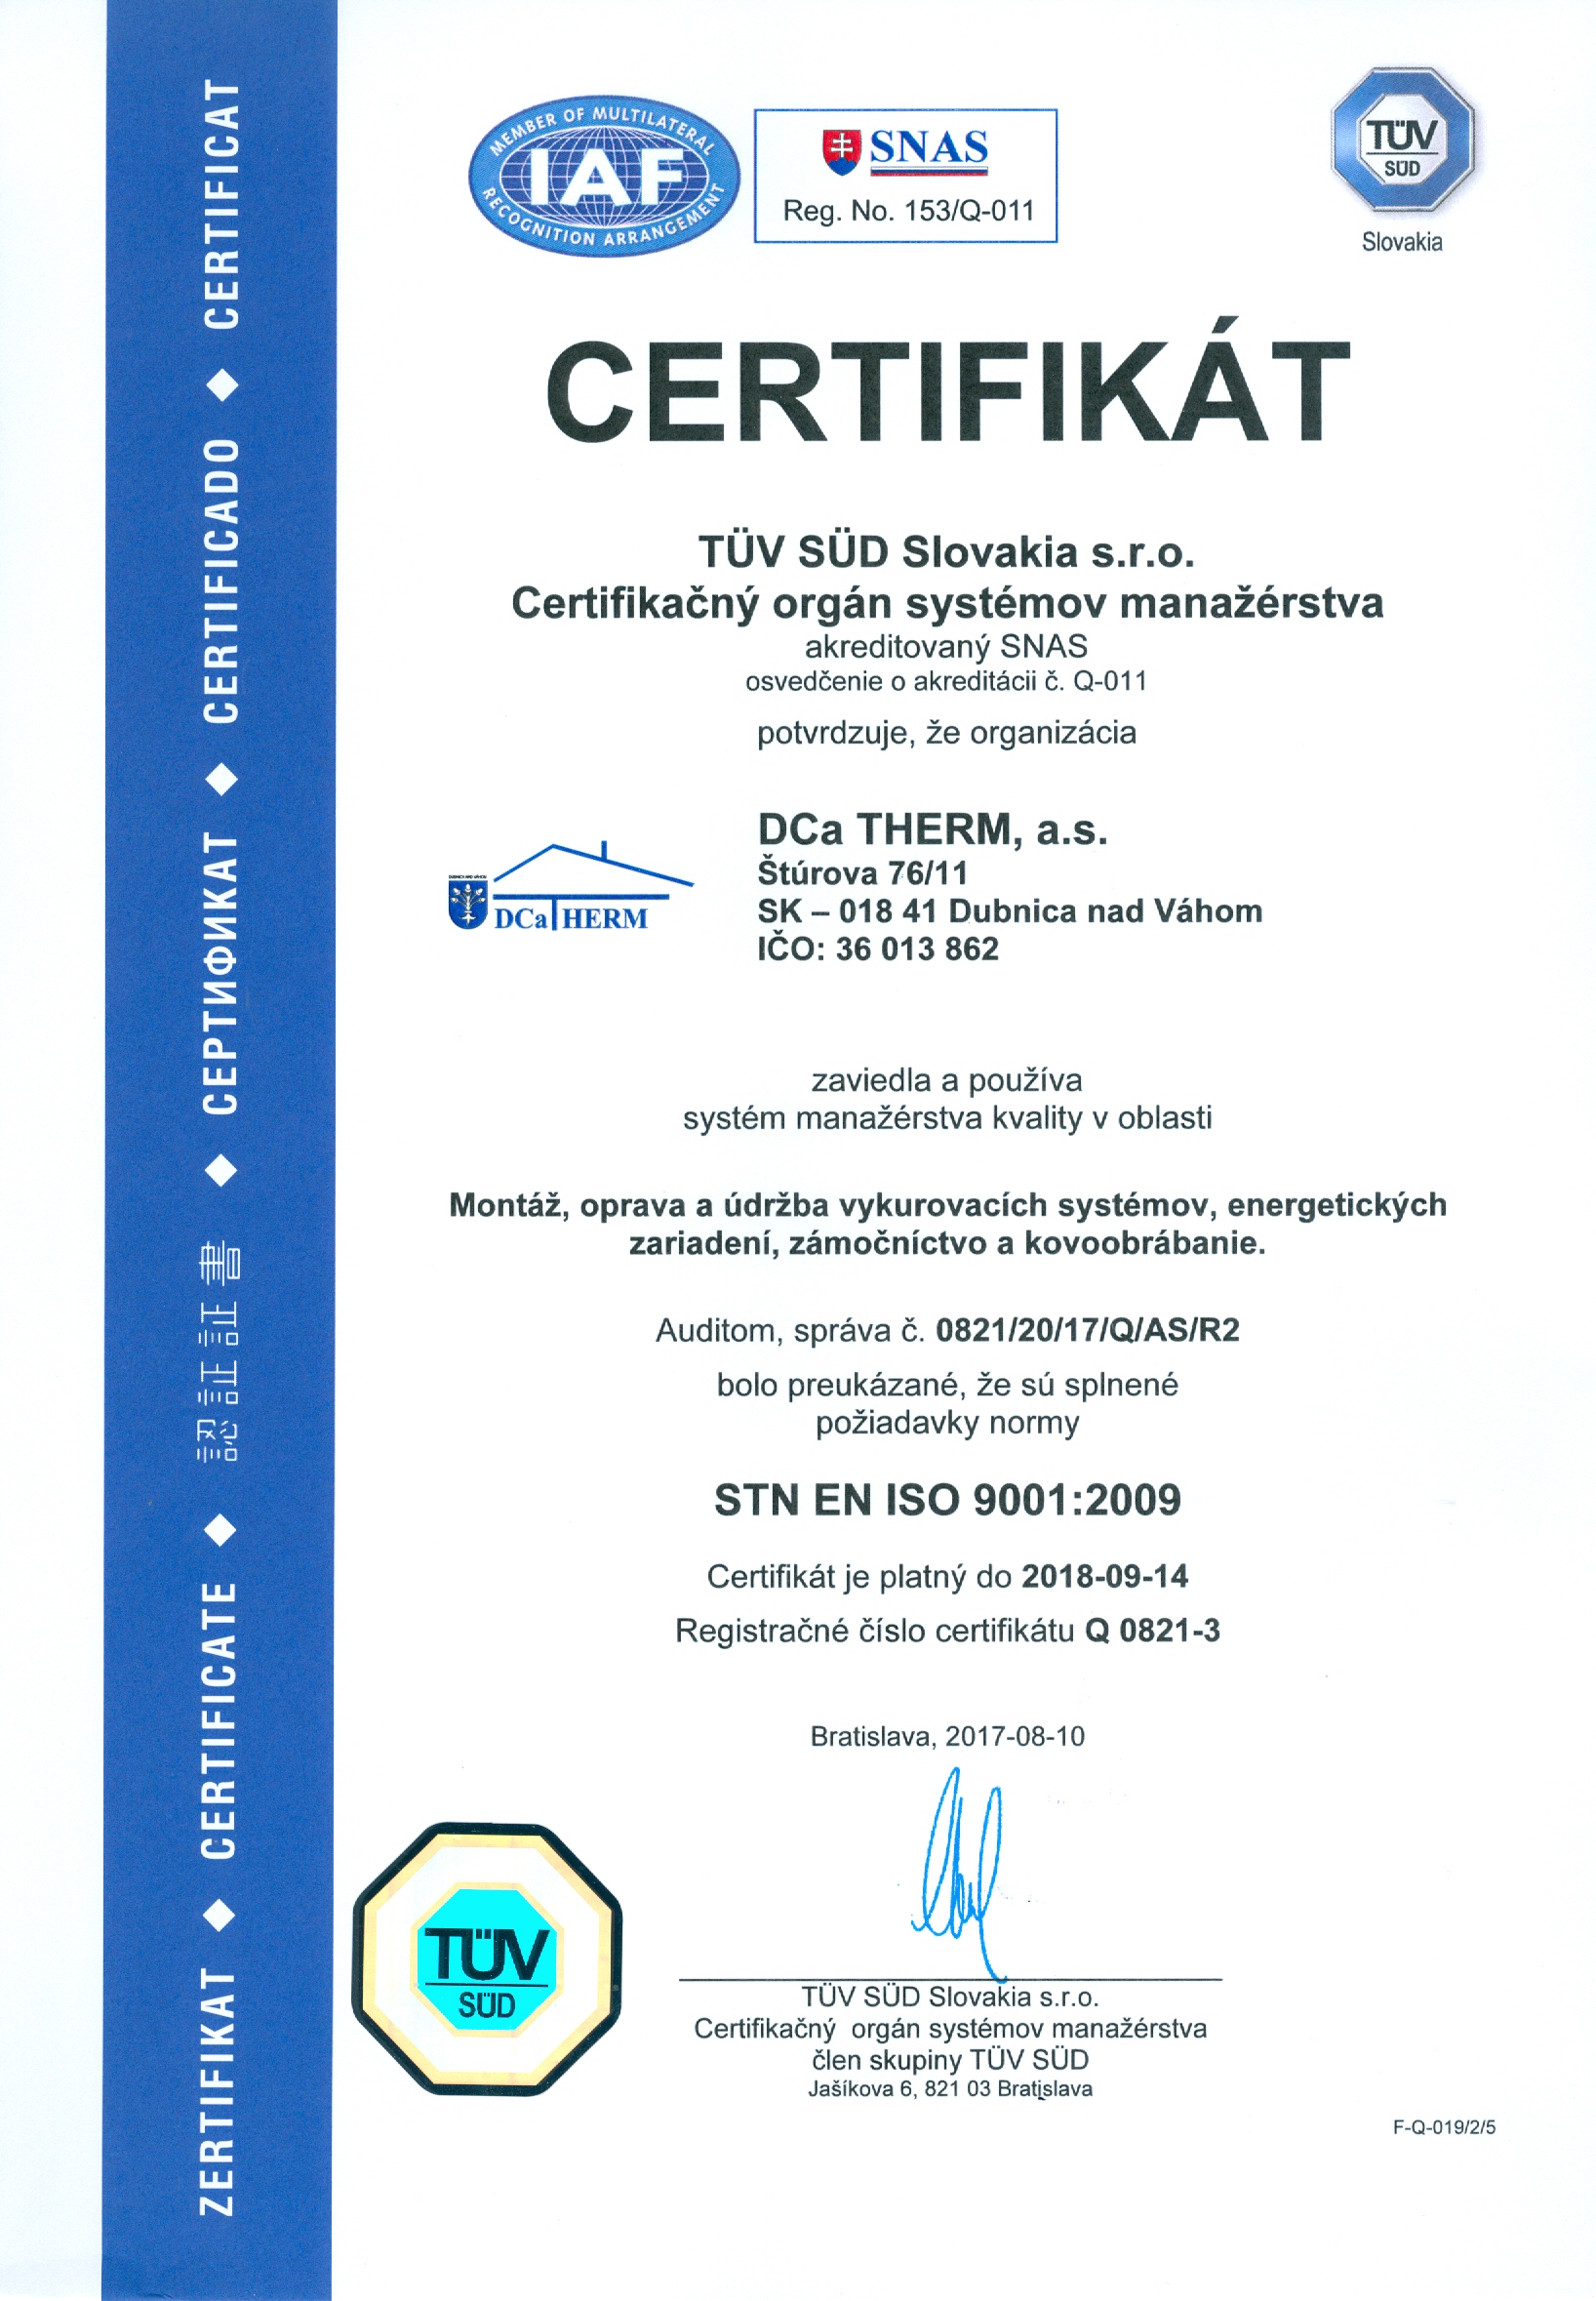 STN EN ISO 9001:2009